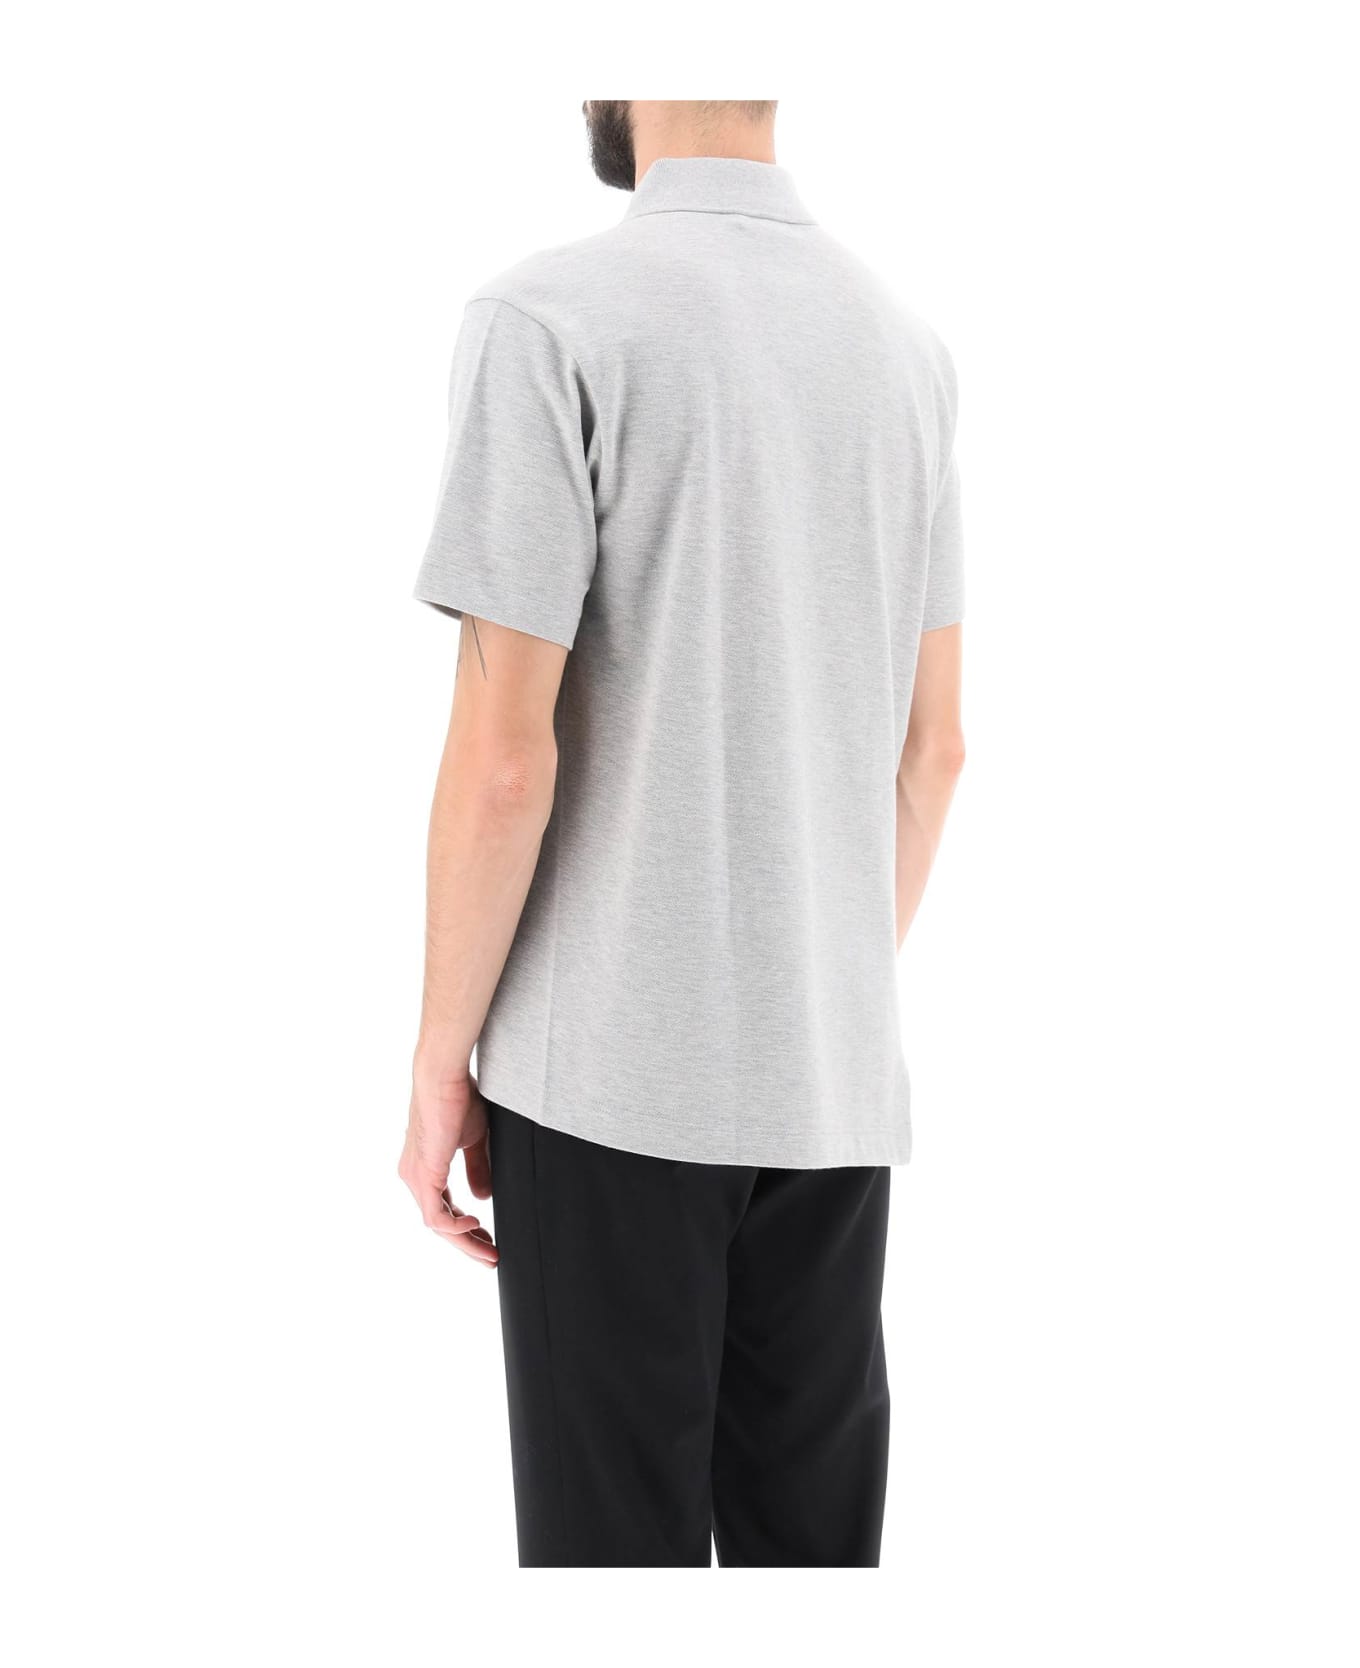 Comme des Garçons Shirt Lacoste Crocodile Polo Shirt - TOP GREY (Grey)